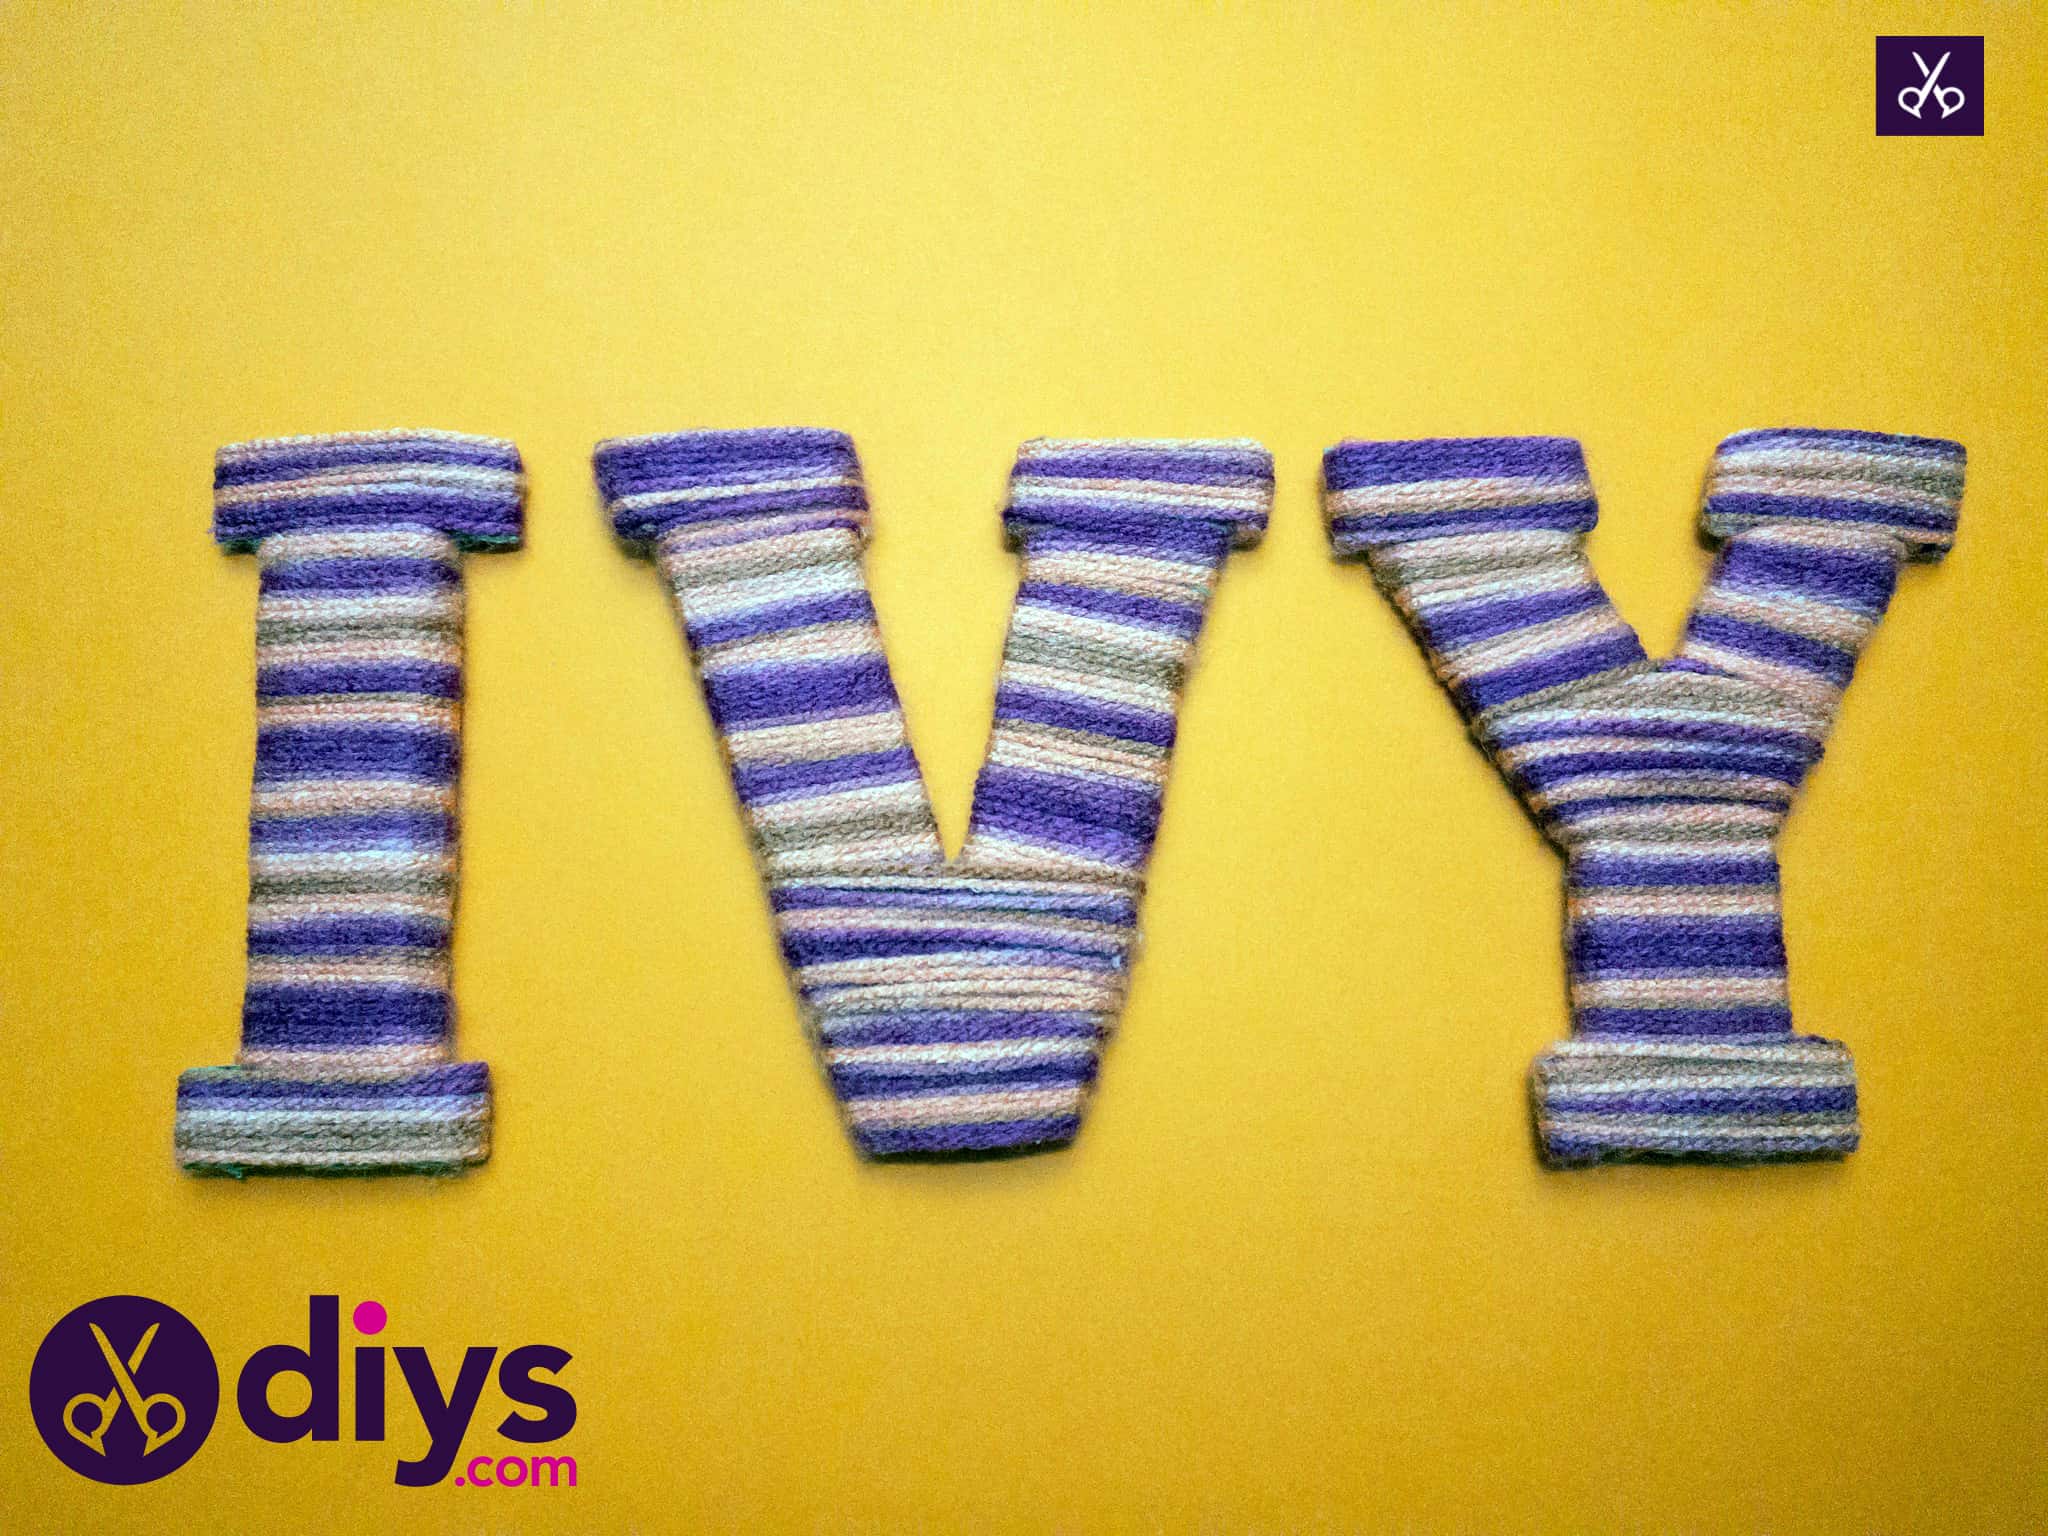 Diy yarn letters